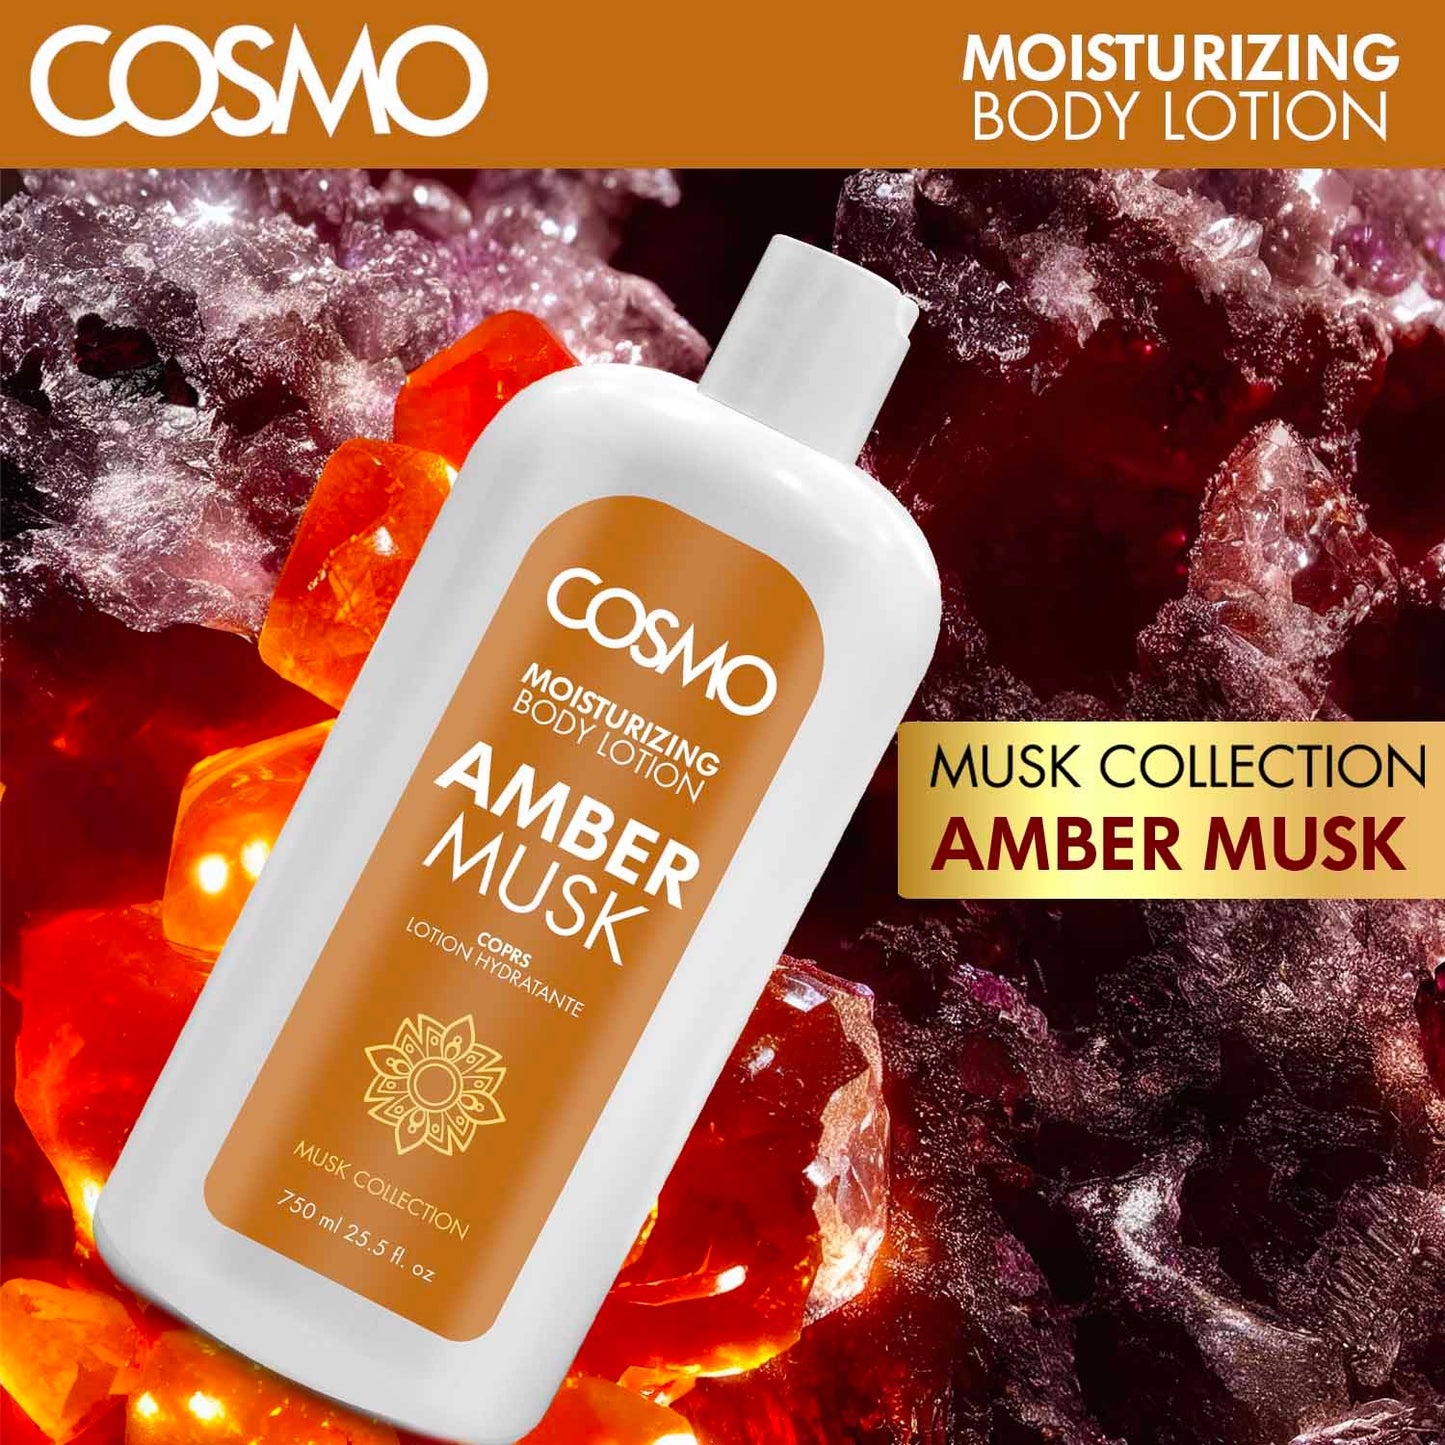 AMBER MUSK - MOISTURIZING BODY LOTION 750ML